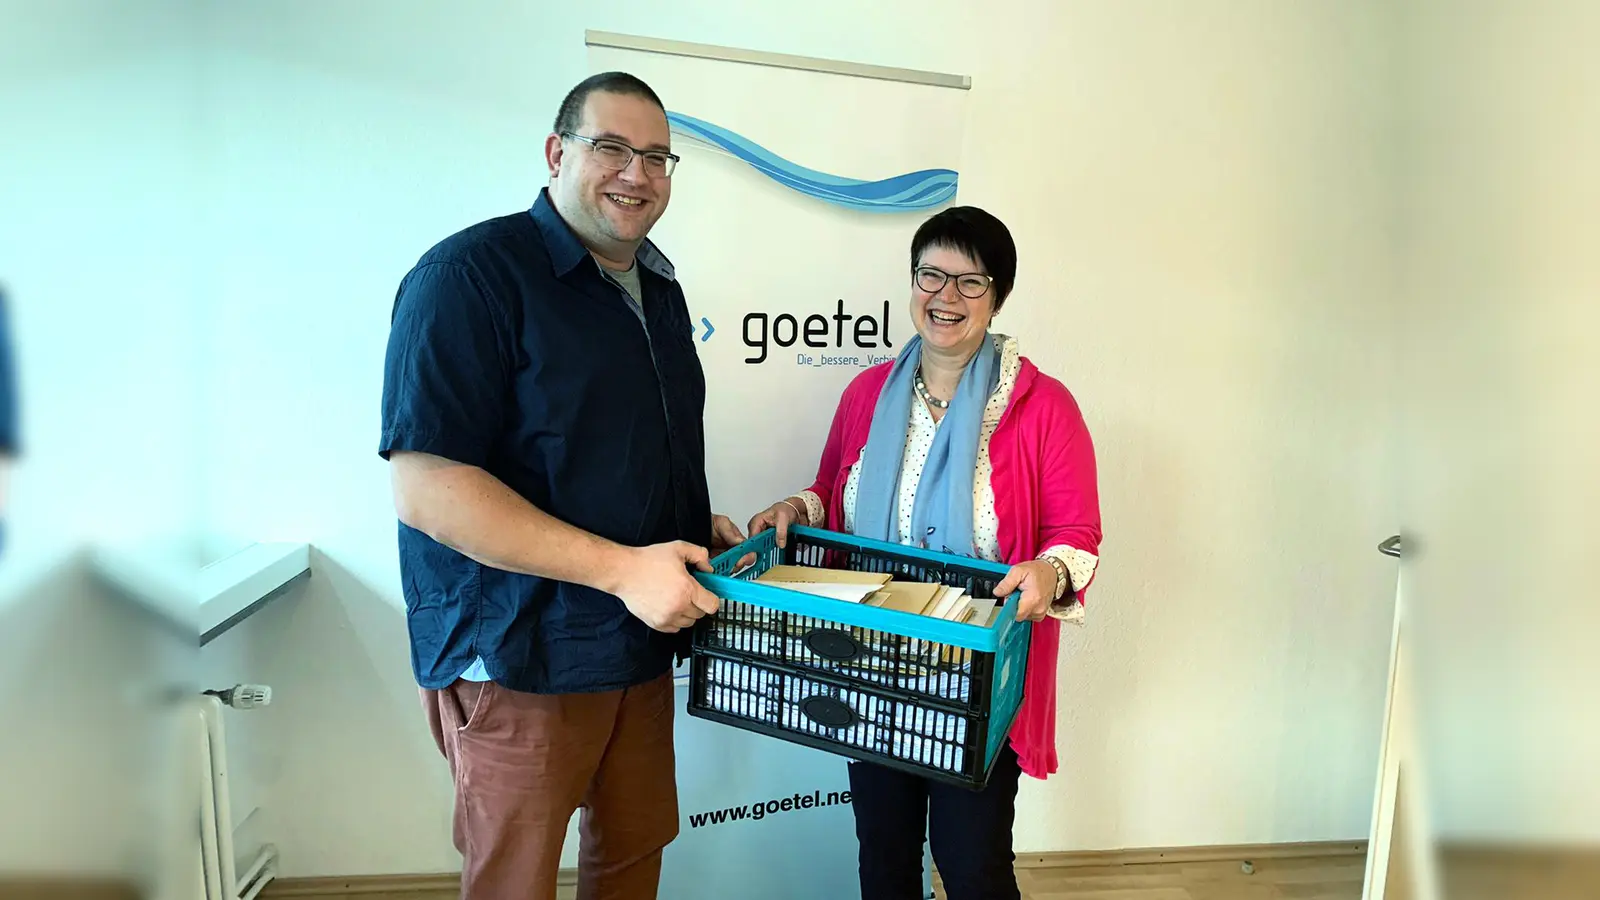 Stefan Finger (Kommunalvertrieb der Göttinger Firma GöTel) nahm die Glasfaser-Anträge der Hombresser von Ortsvorsteherin Regine Bresler entgegen. (Foto: Foto: privat)